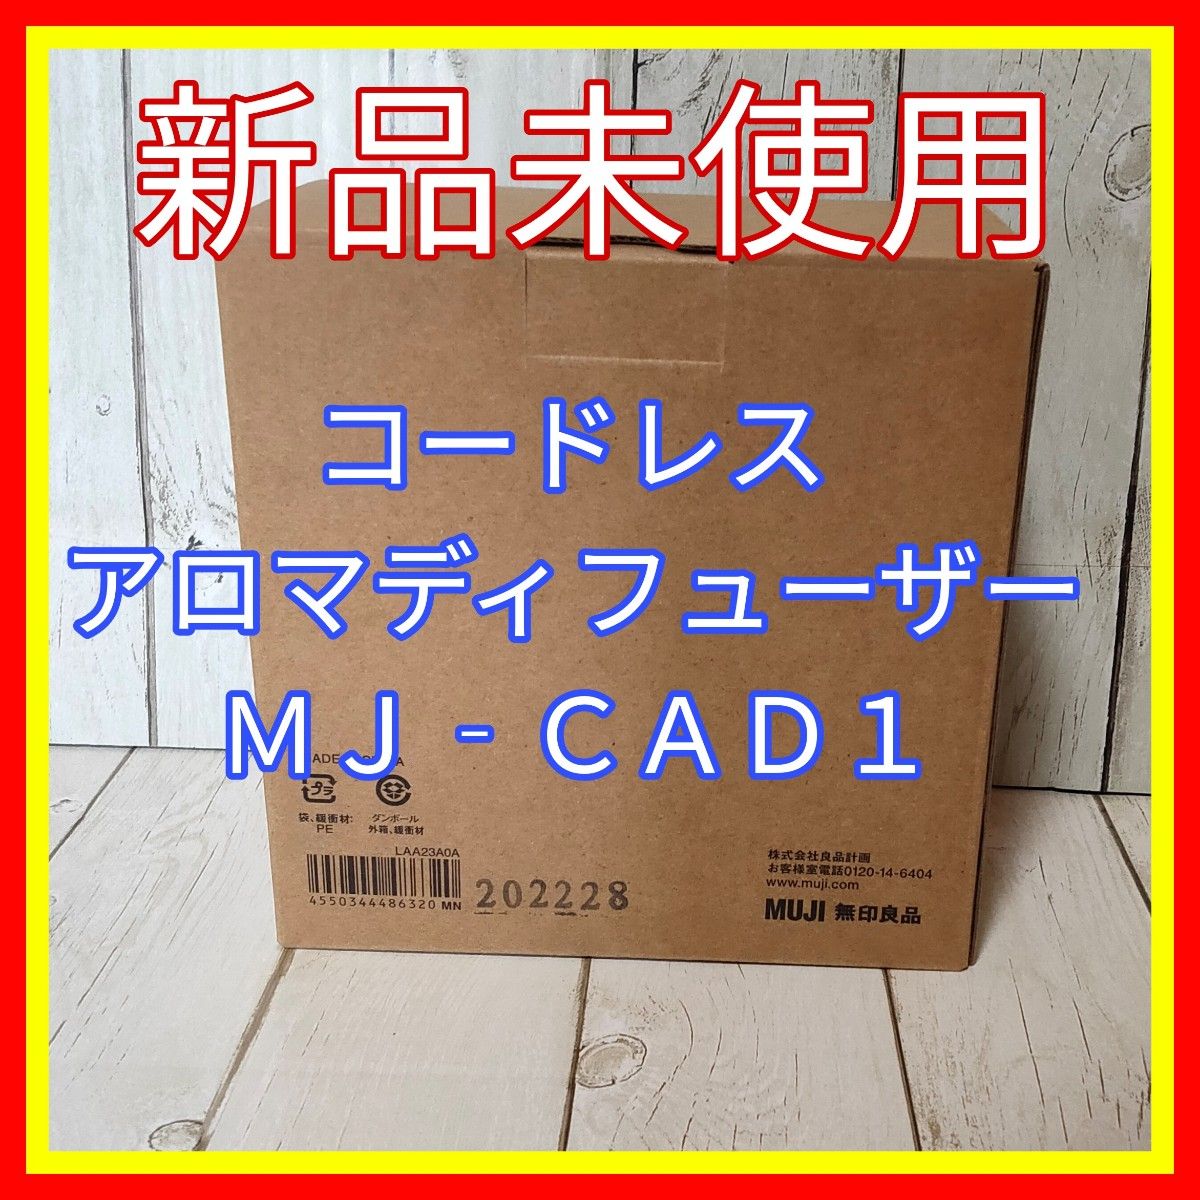 コードレスアロマディフューザー MJ-CAD1